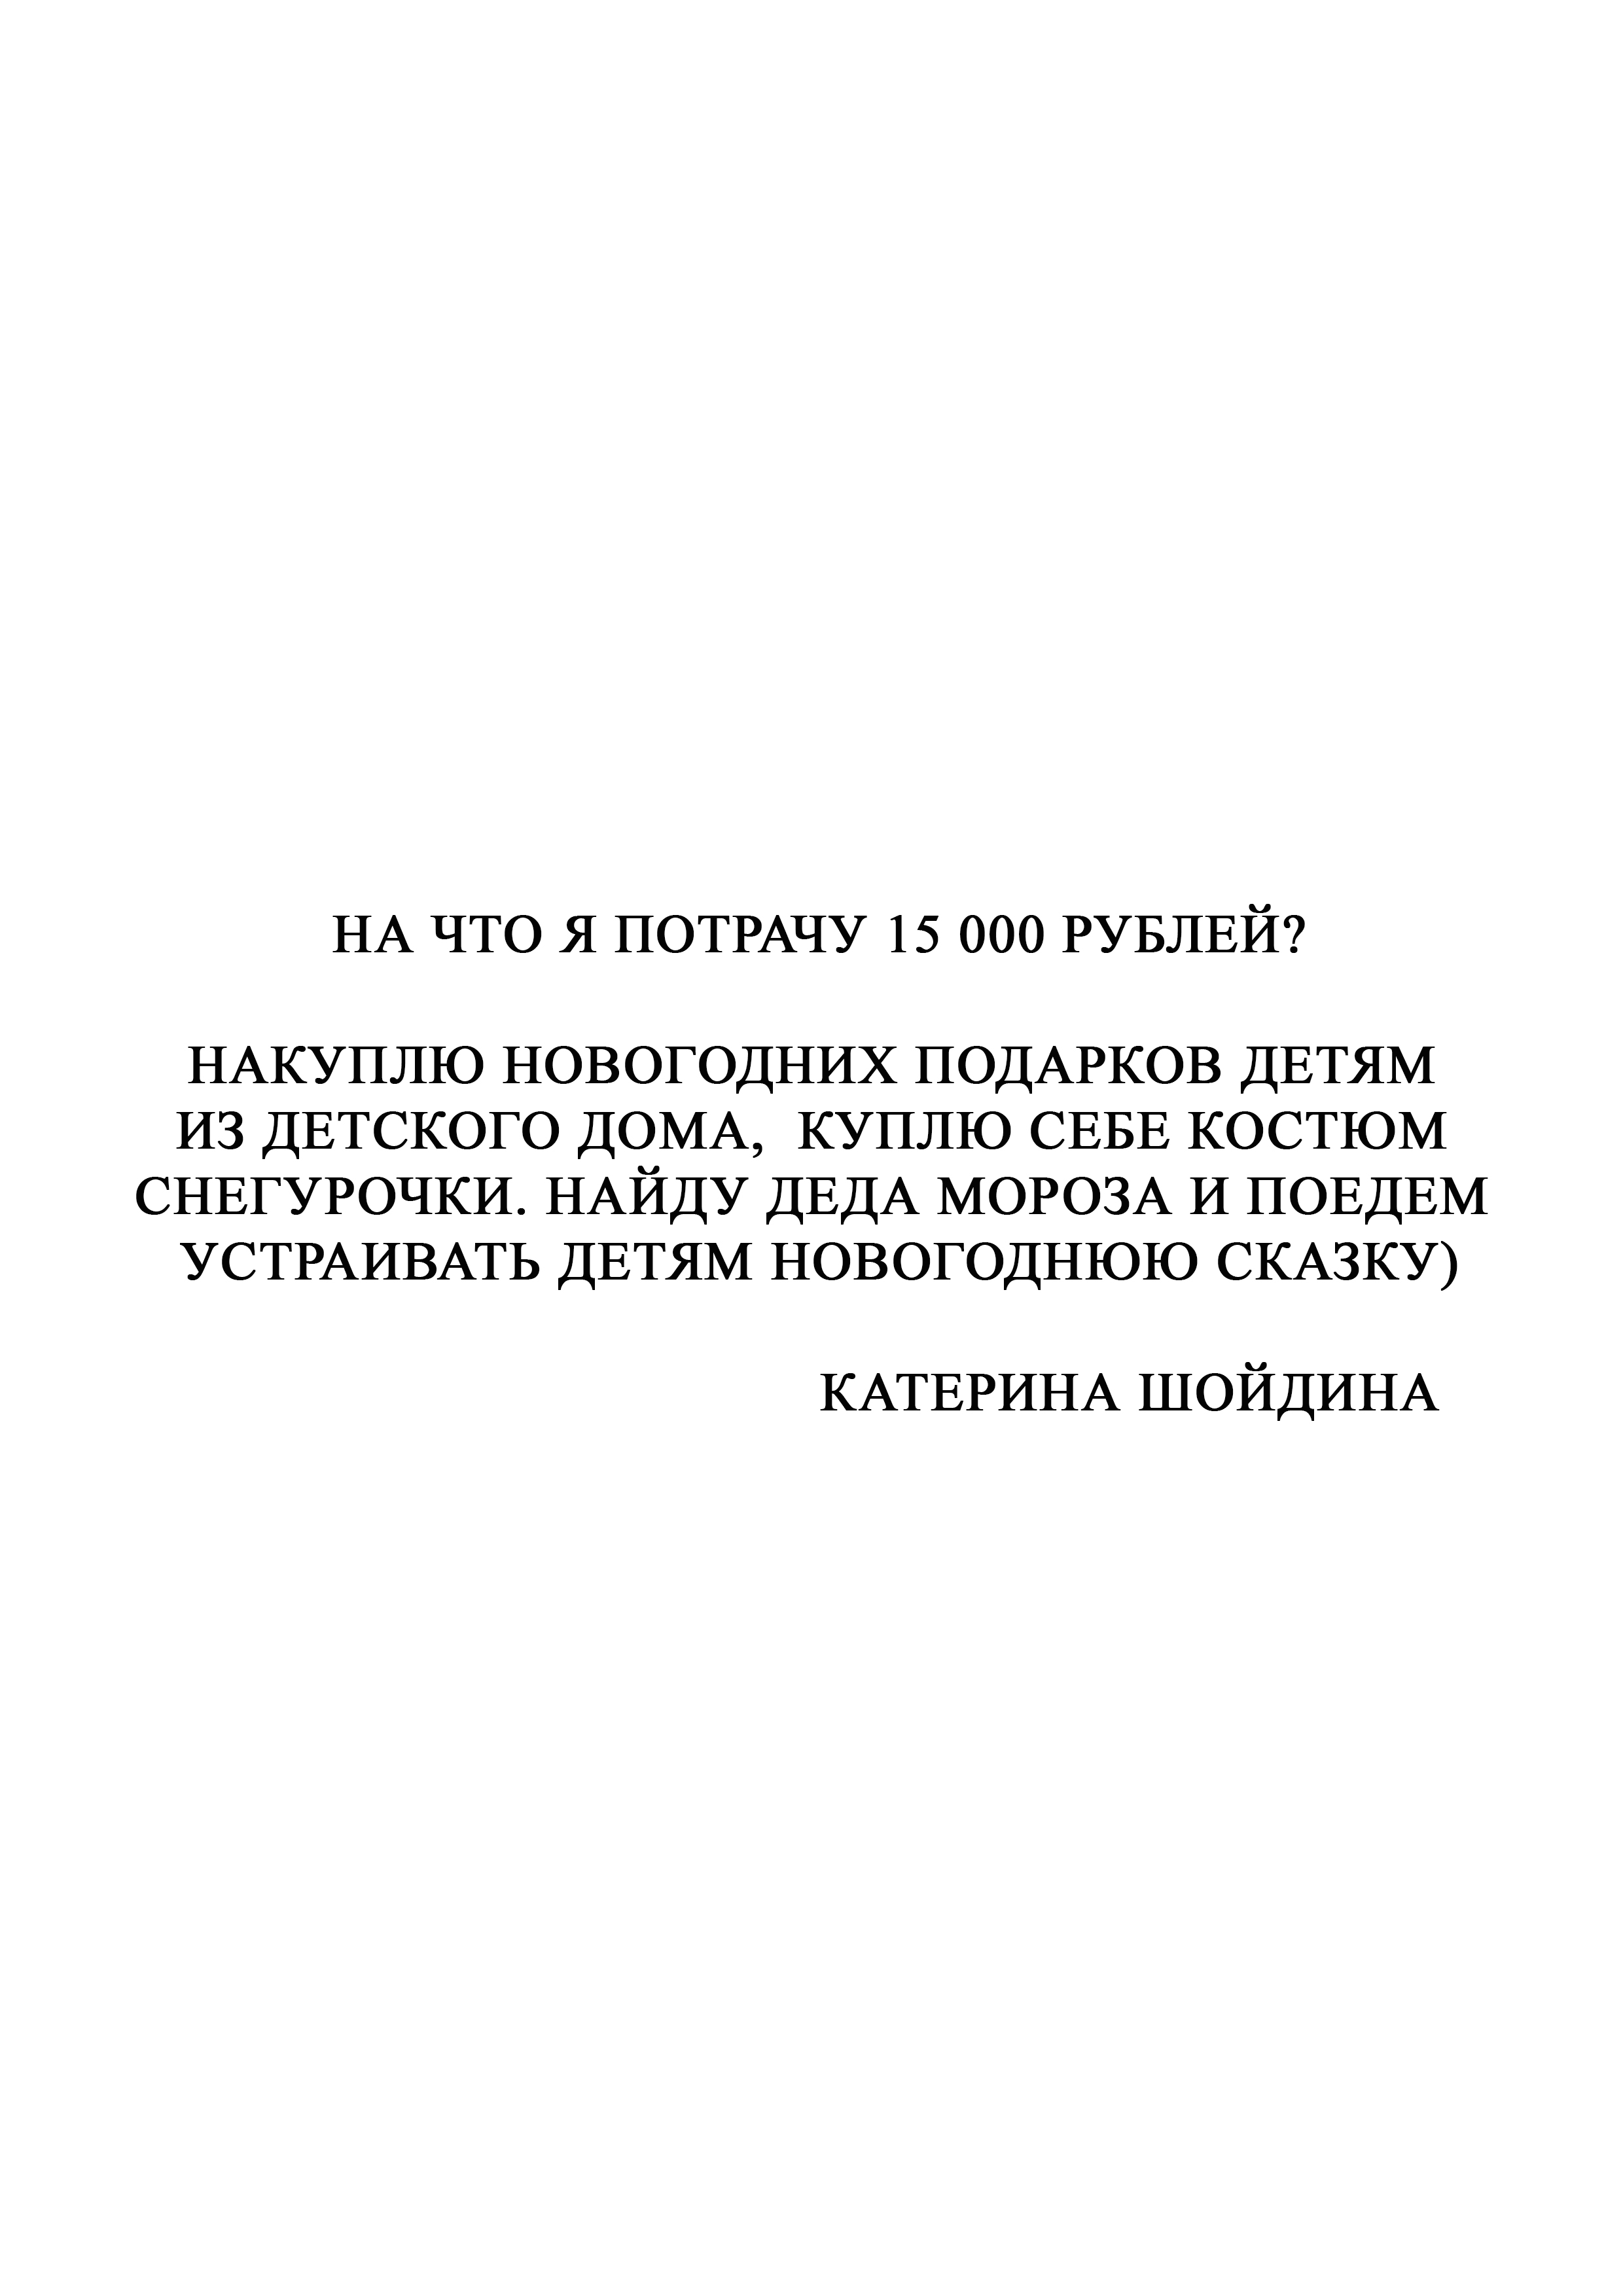 Катерина Шойдина